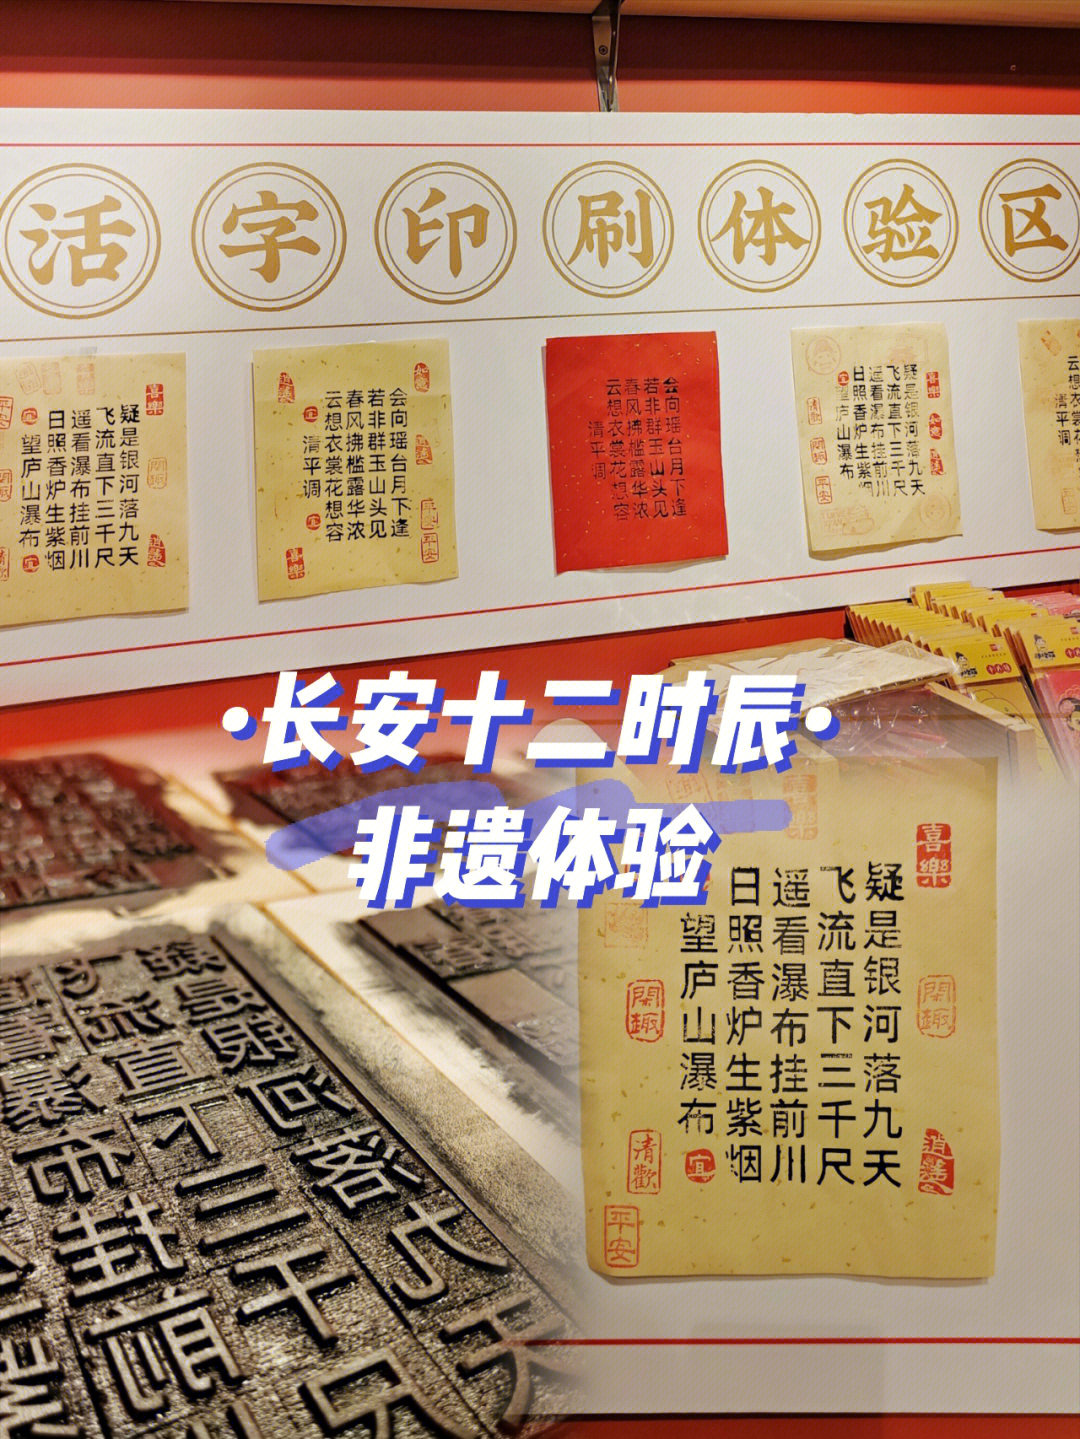 94印刷术是中国古代四大发明之一,活字印刷术源自于唐朝发明的雕版